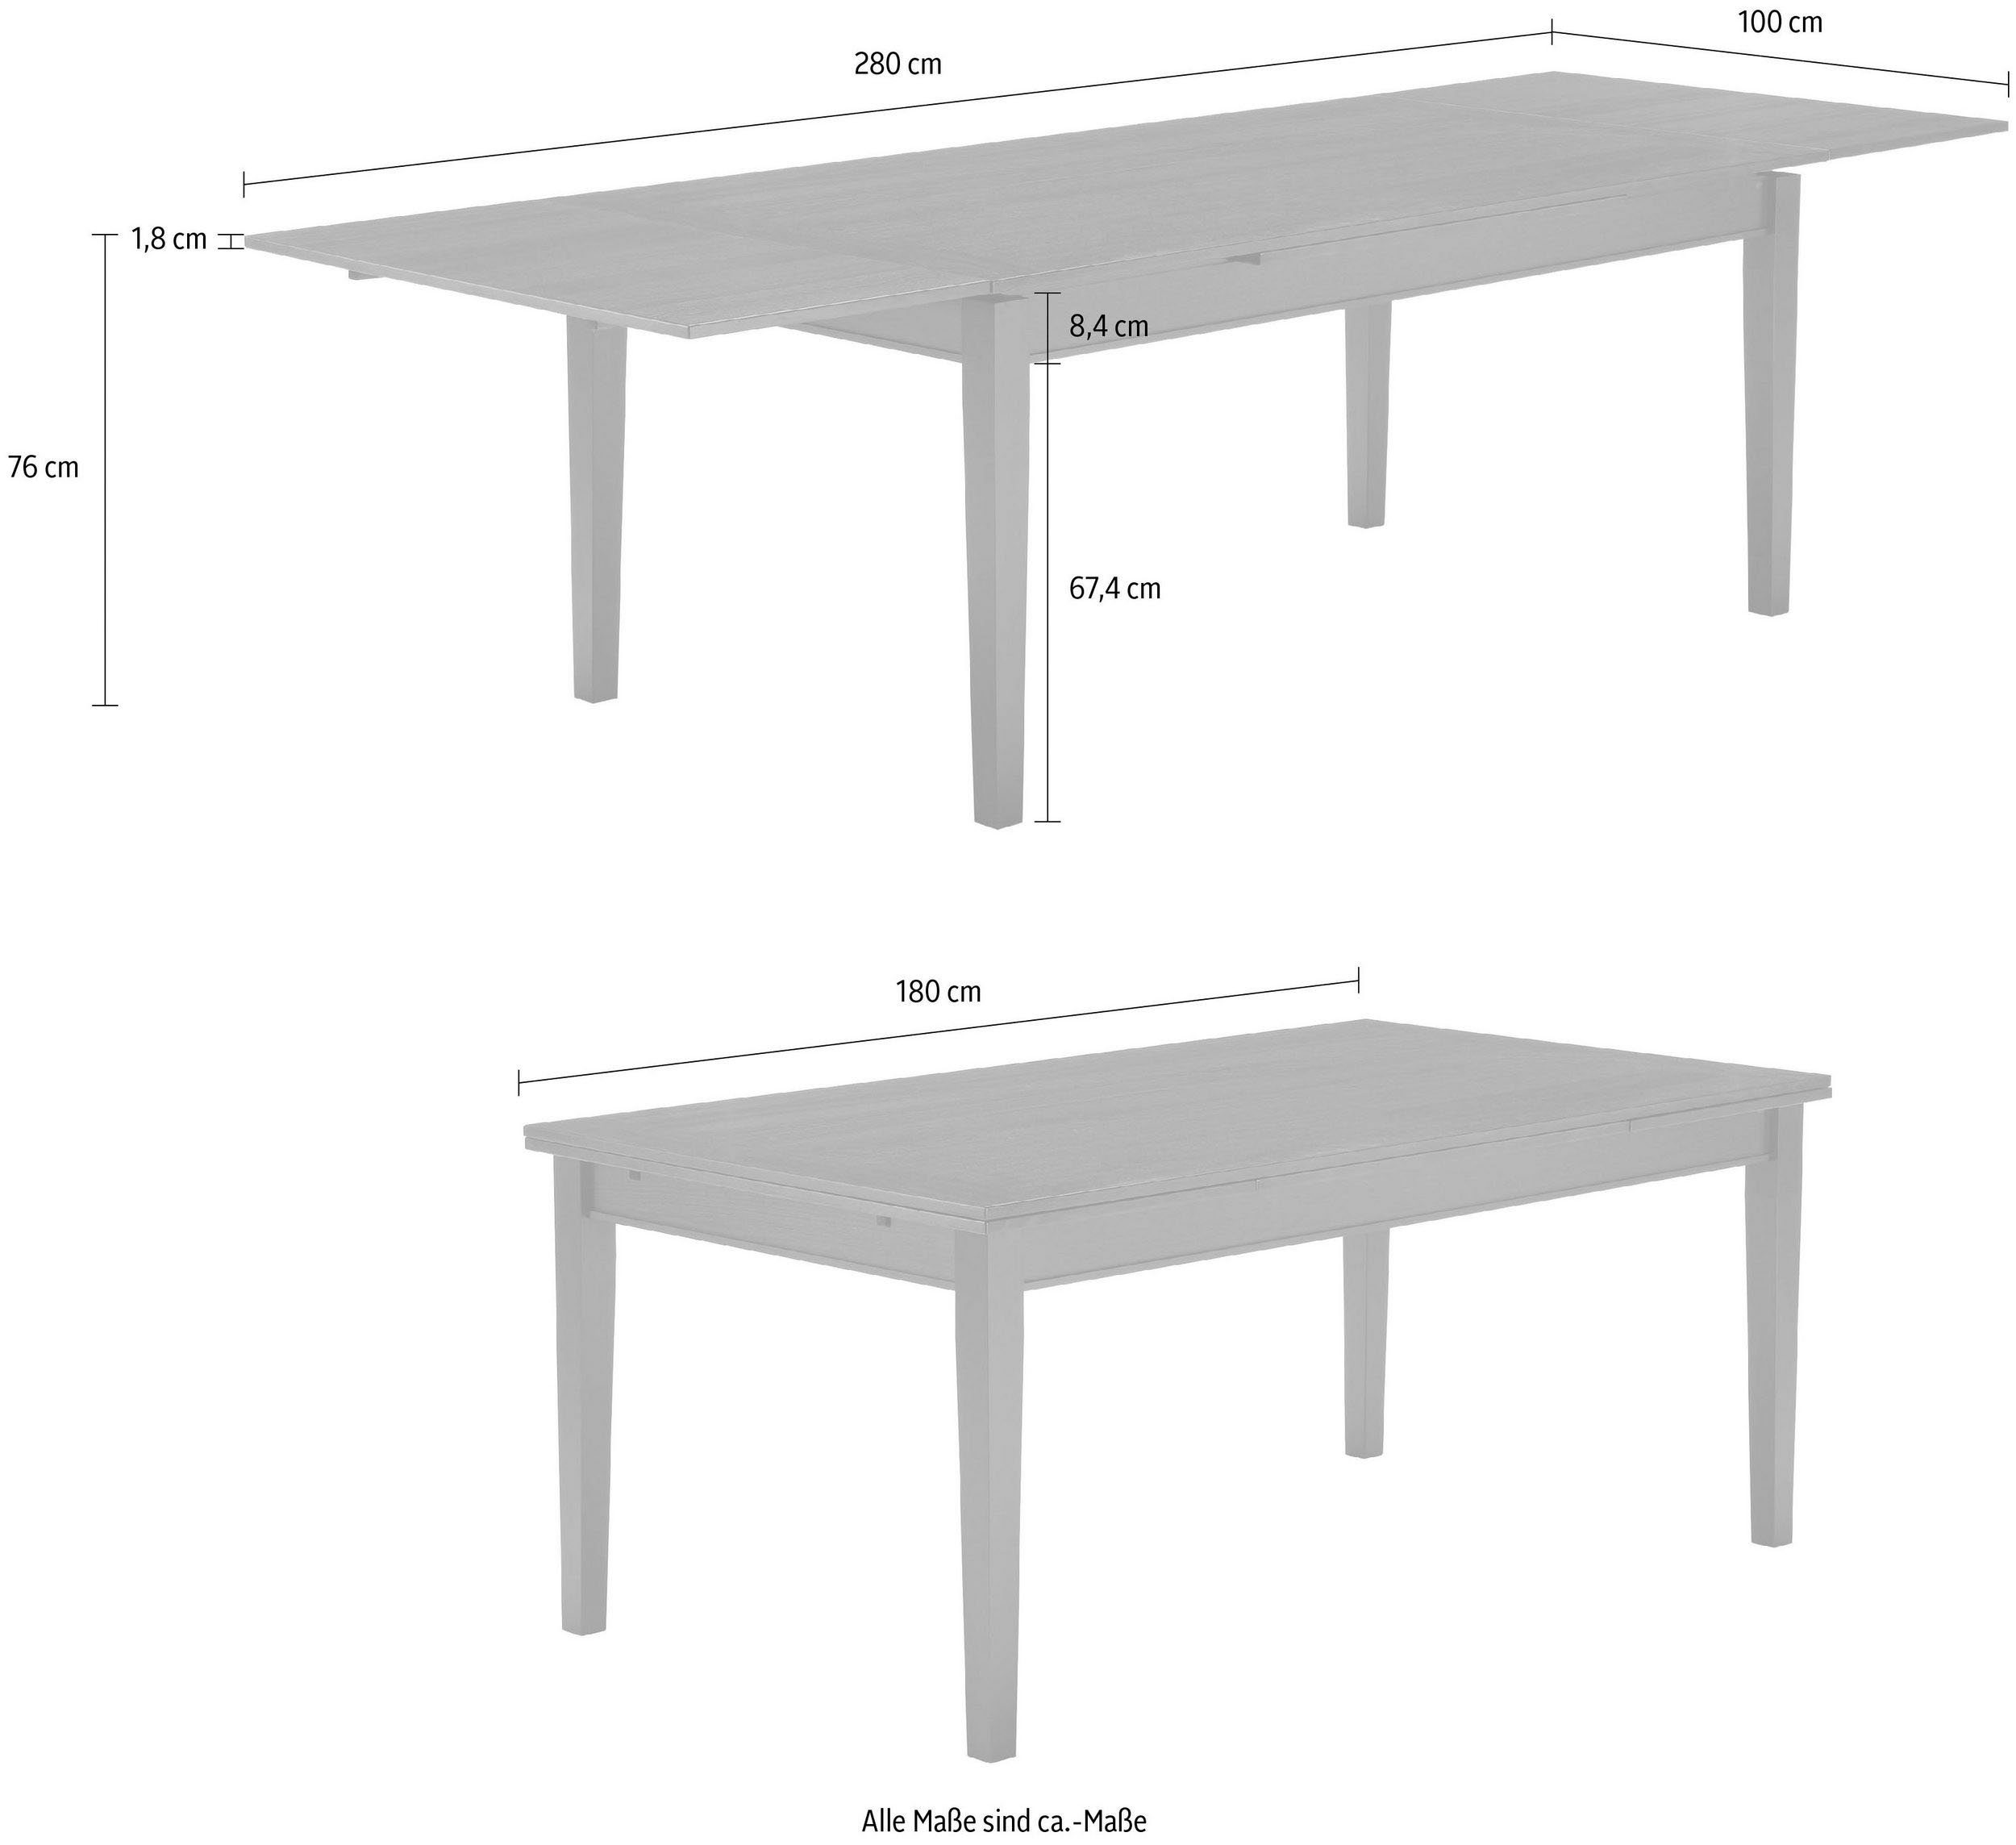 Hammel Furniture Esstisch Wenge Gestell Tischplatte cm, 180(280)x100 Hammel in Massivholz und by Furnier Sami, in Basic